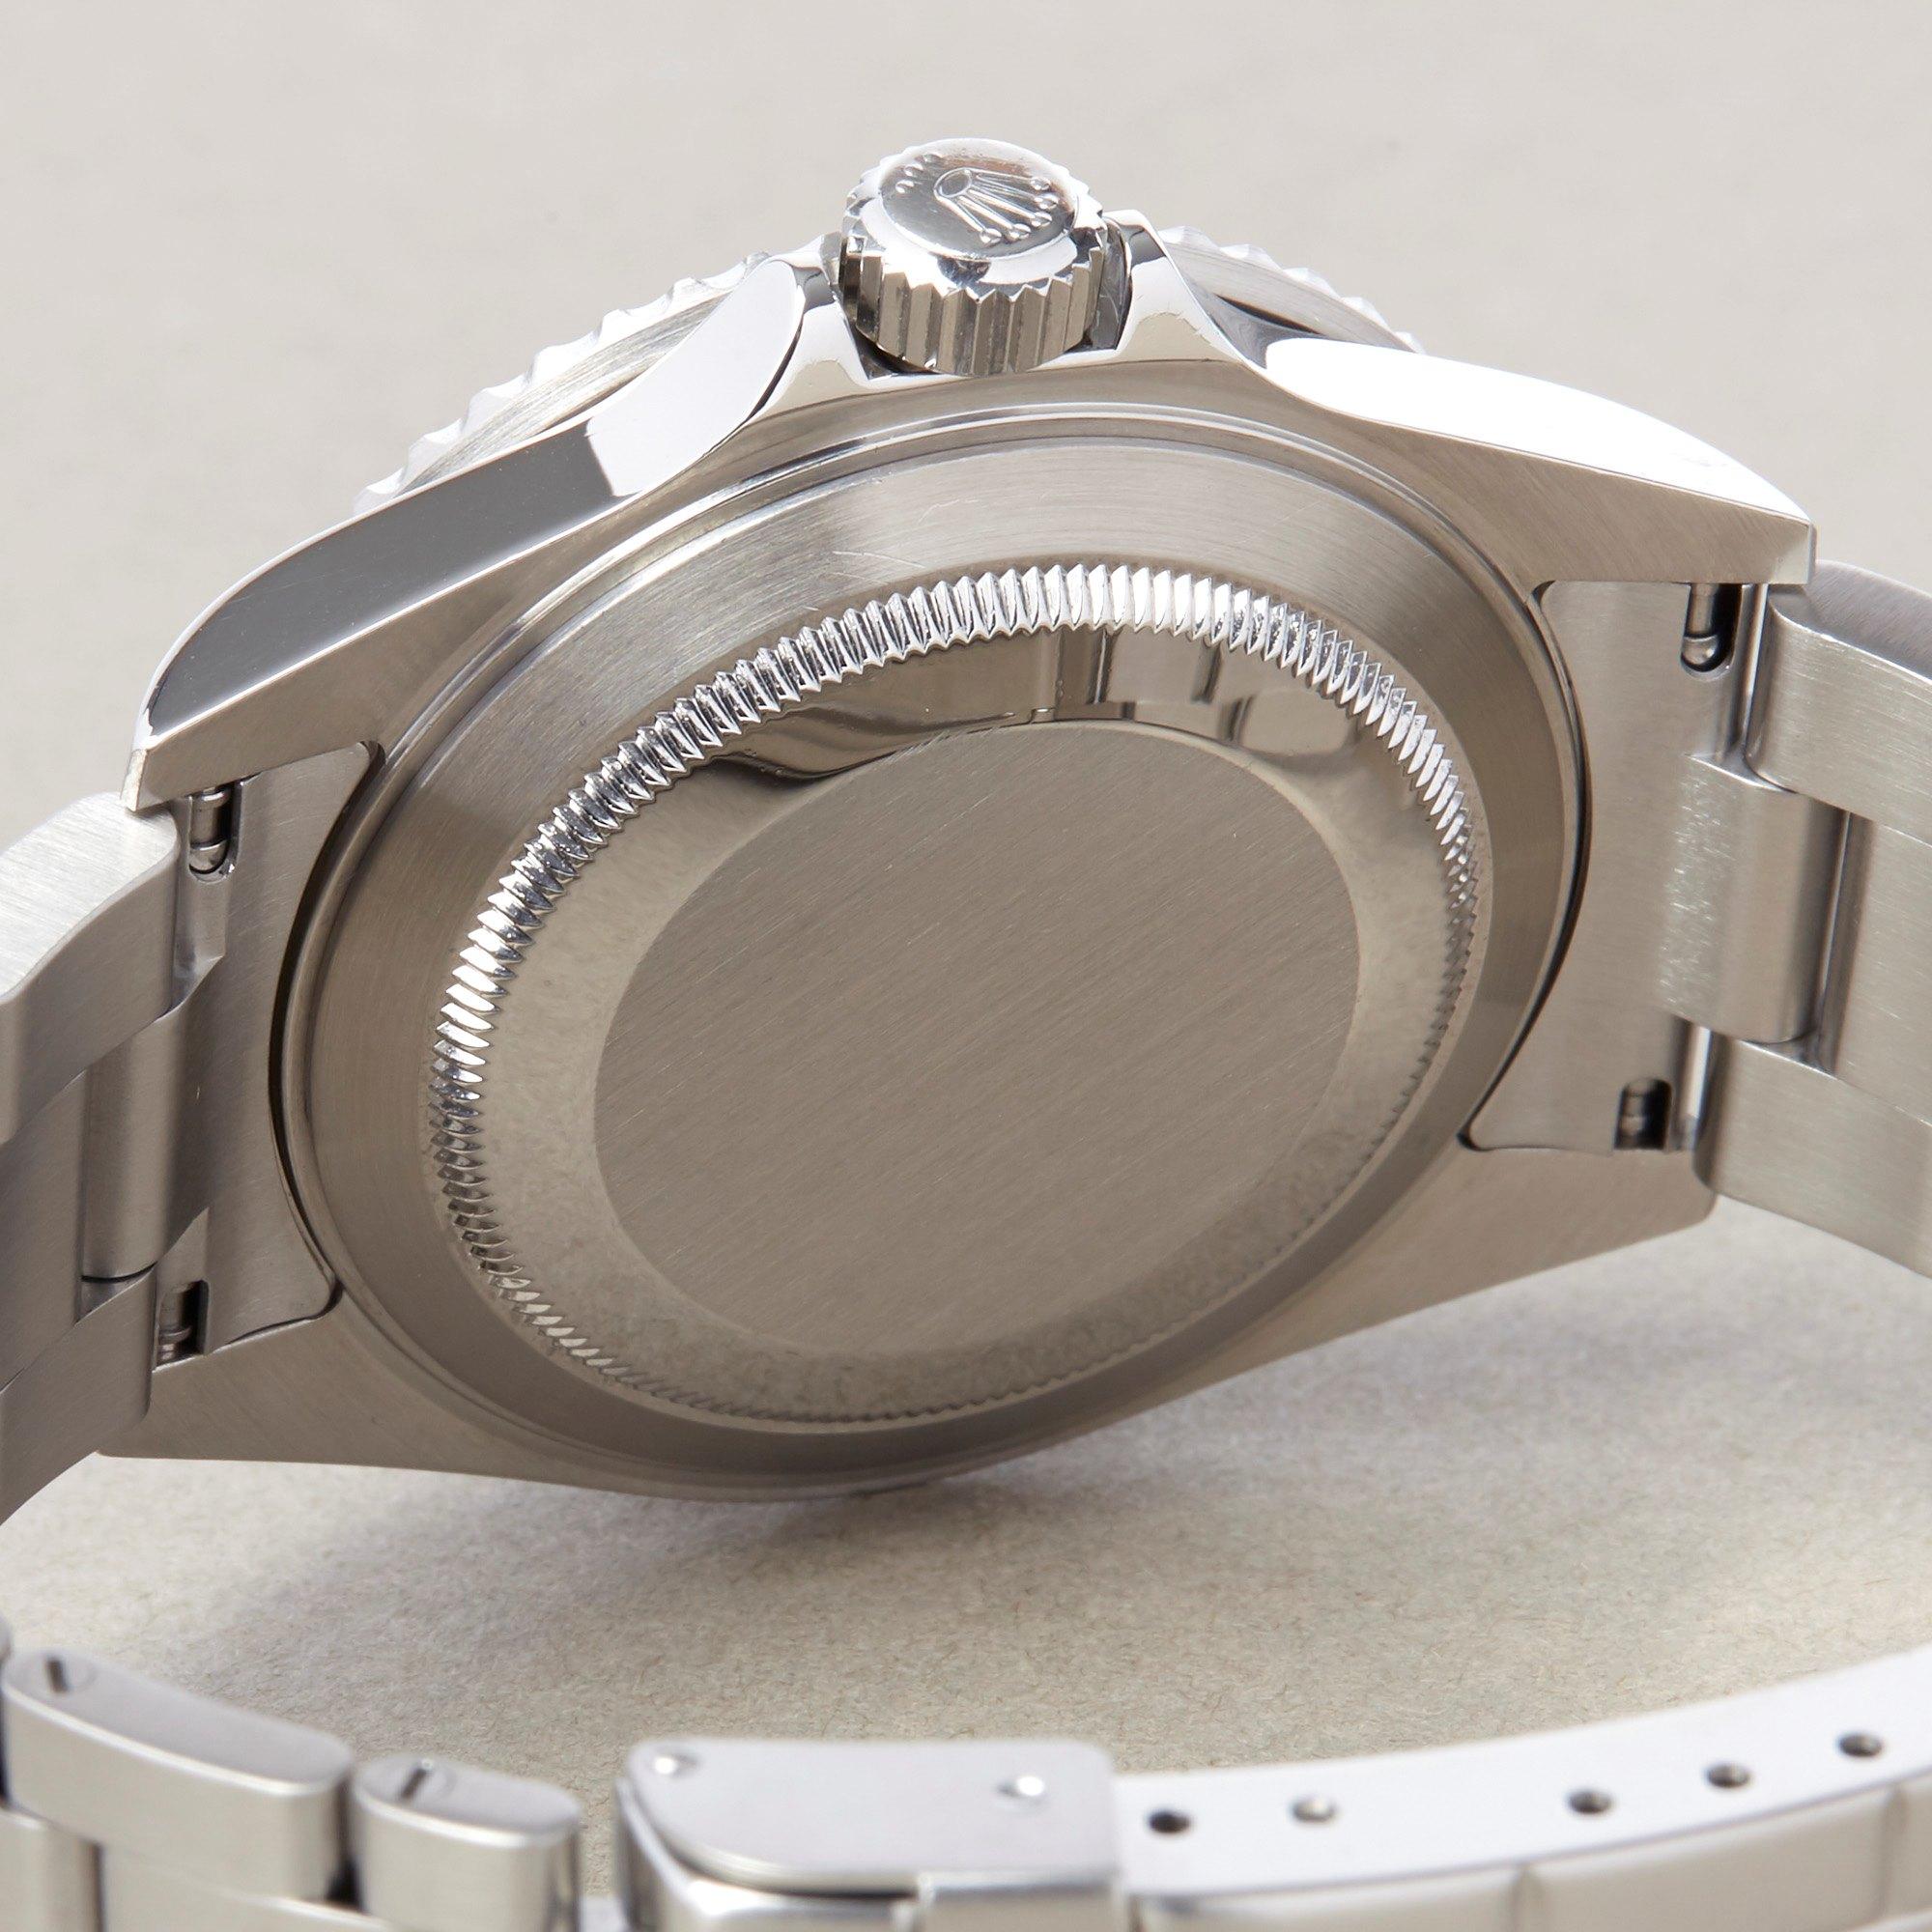 Rolex Submariner Date 16610 Men's Stainless Steel Watch 3